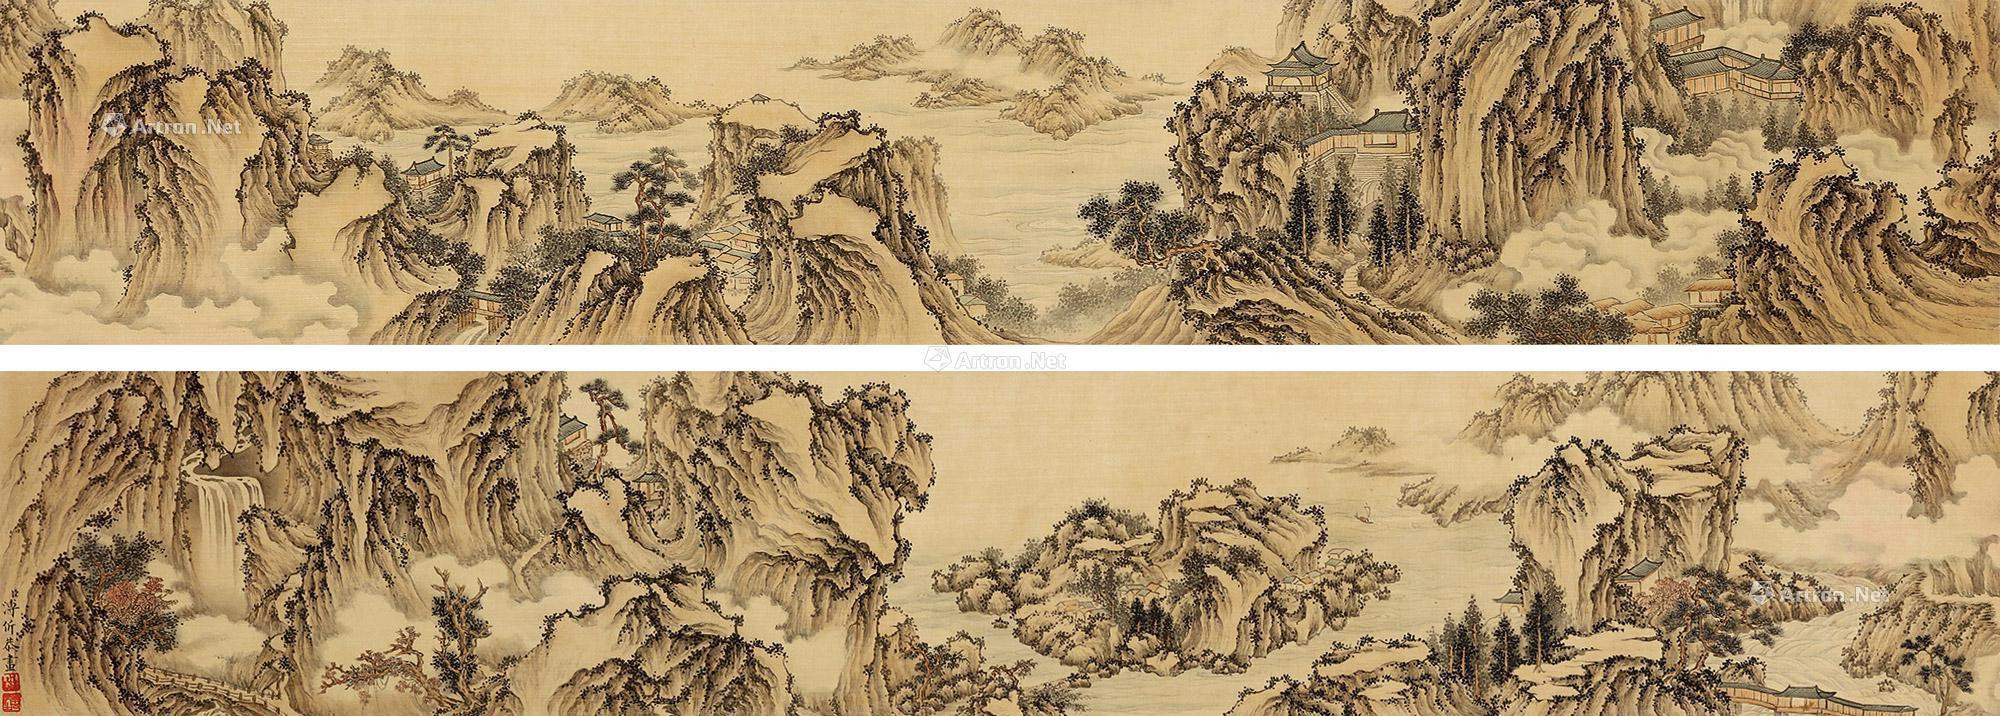 Landscape draws by Pu Jian